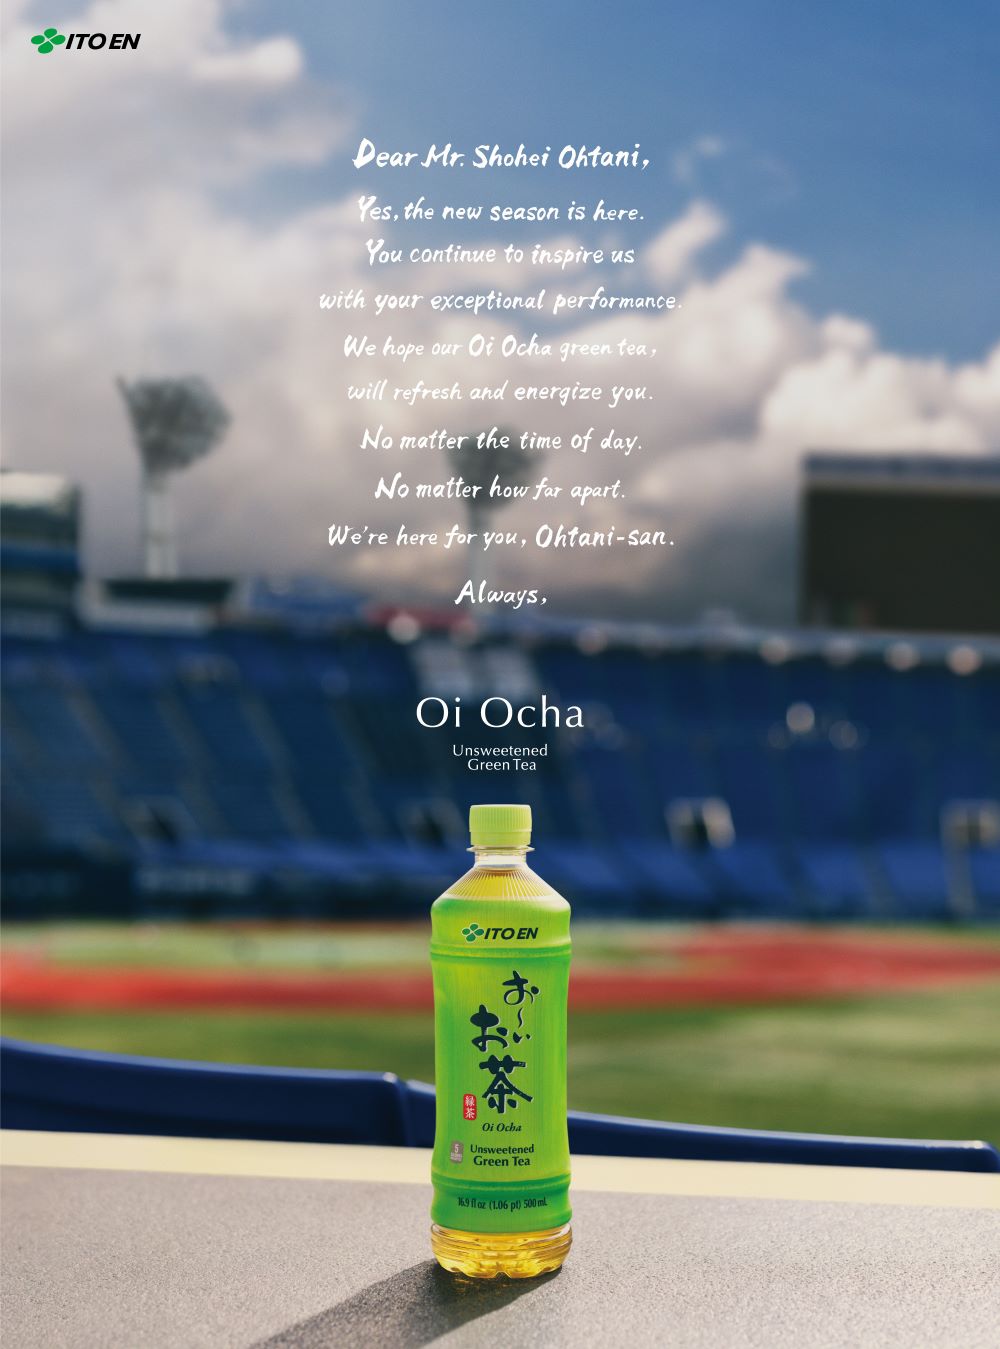 ข่าวประชาสัมพันธ์ - PR News Shohei Ohtani Signs Global Partnership with ITO EN's Green Tea Brand "Oi Ocha"